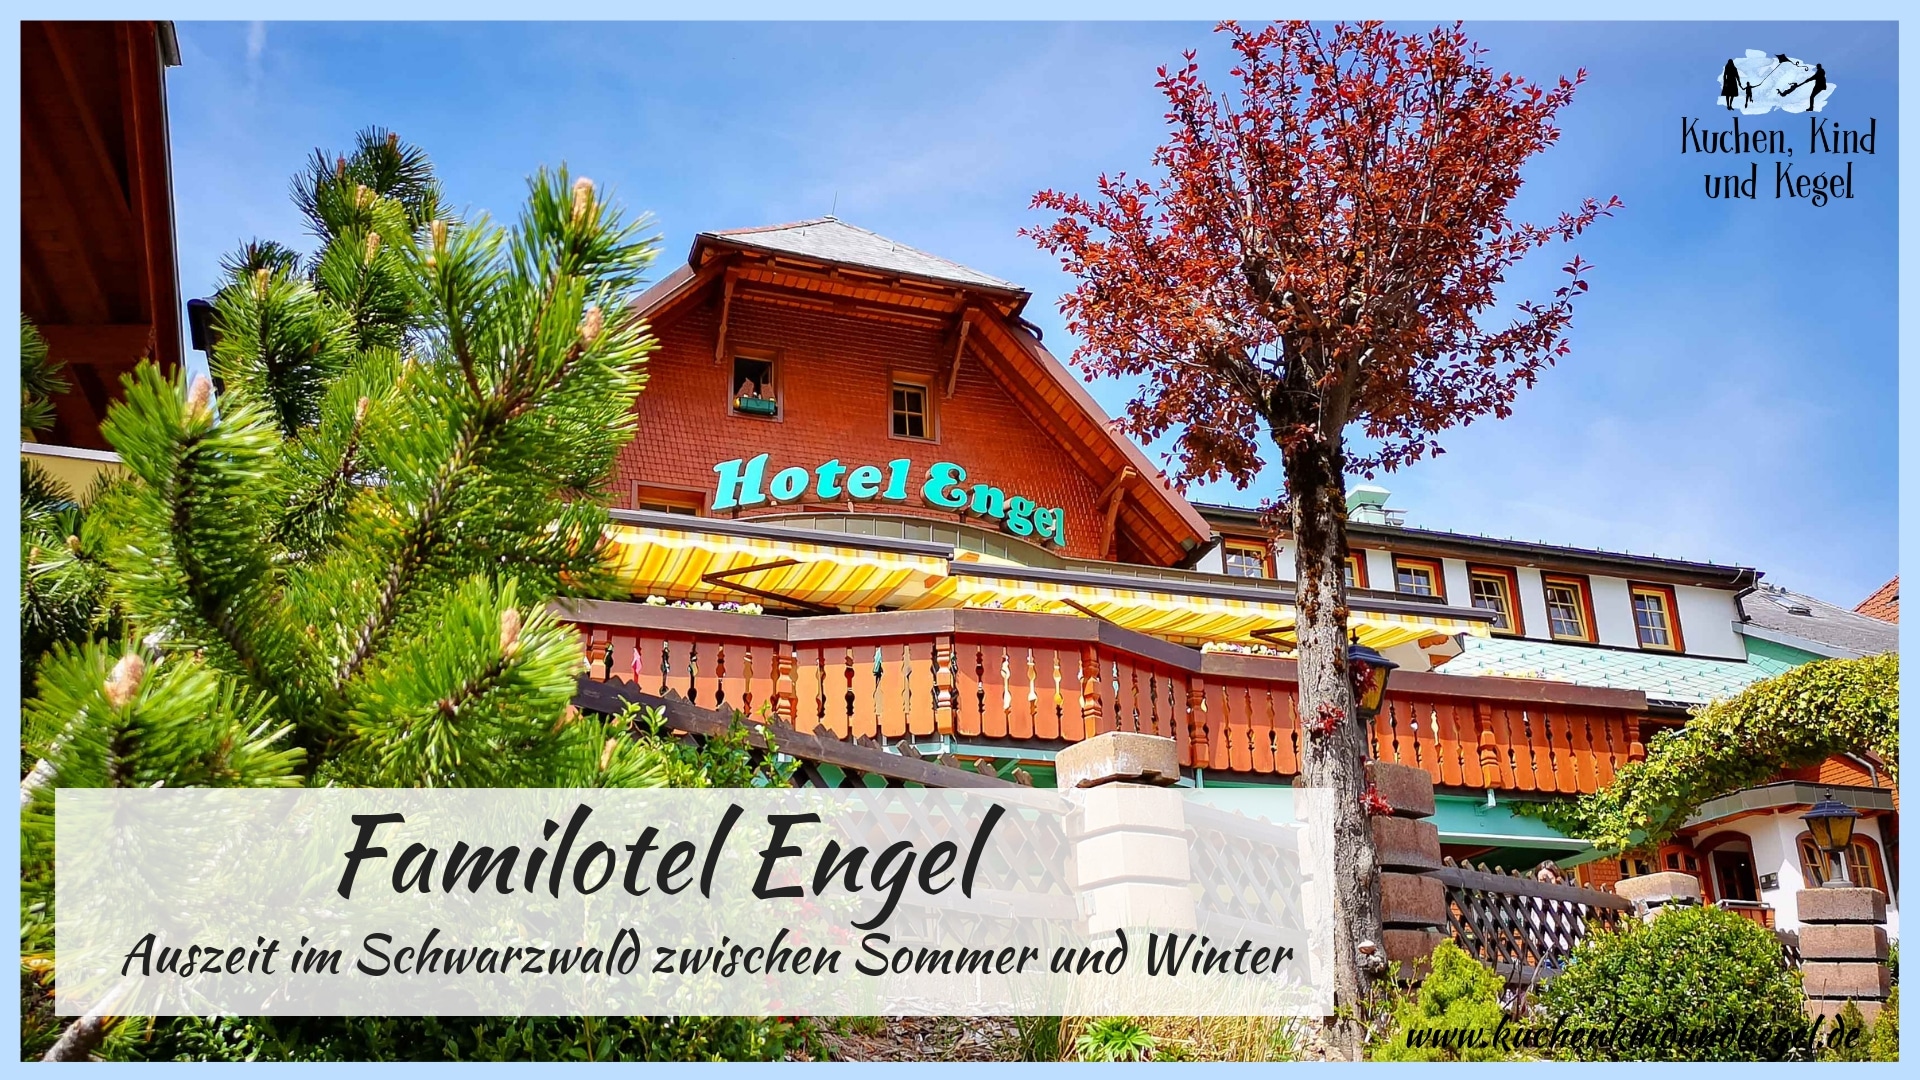 Auszeit im Schwarzwald – Zwischen Sommer und Winter im Hotel Engel